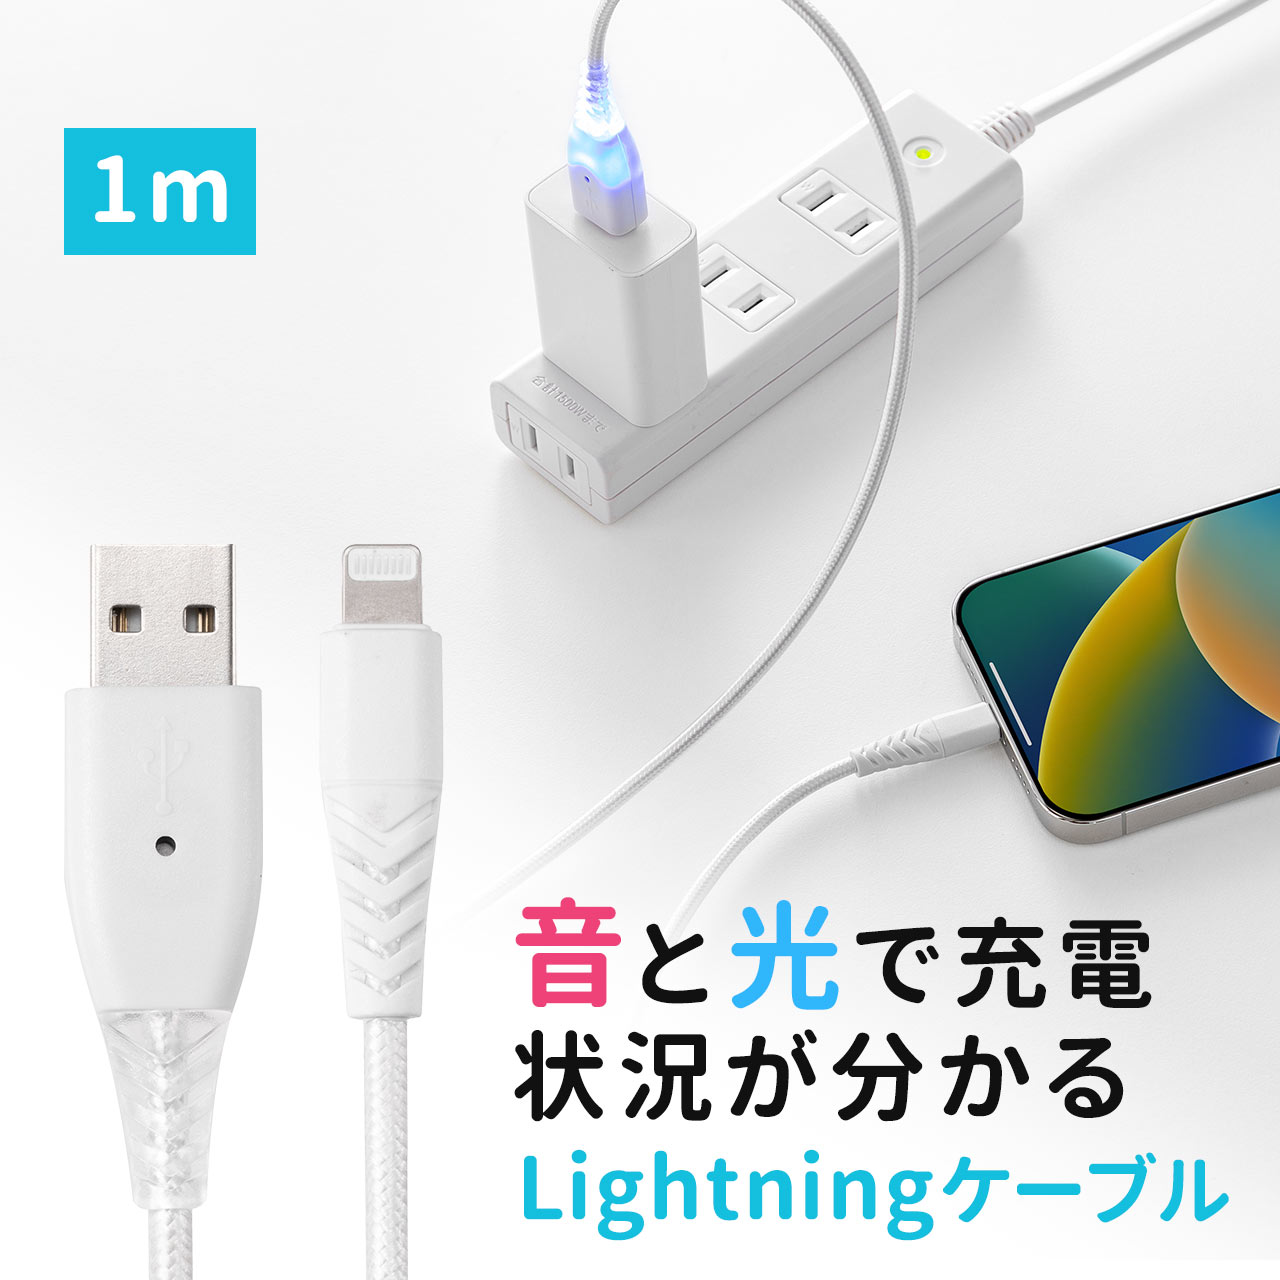 iPhone スマホ 充電ケーブル 充電お知らせ 3in1 Lightning USB Type-C microUSB ケーブル MFi認証品 iPad タブレット 断線に強い 断線しにくい 1m 500-IPLM028W